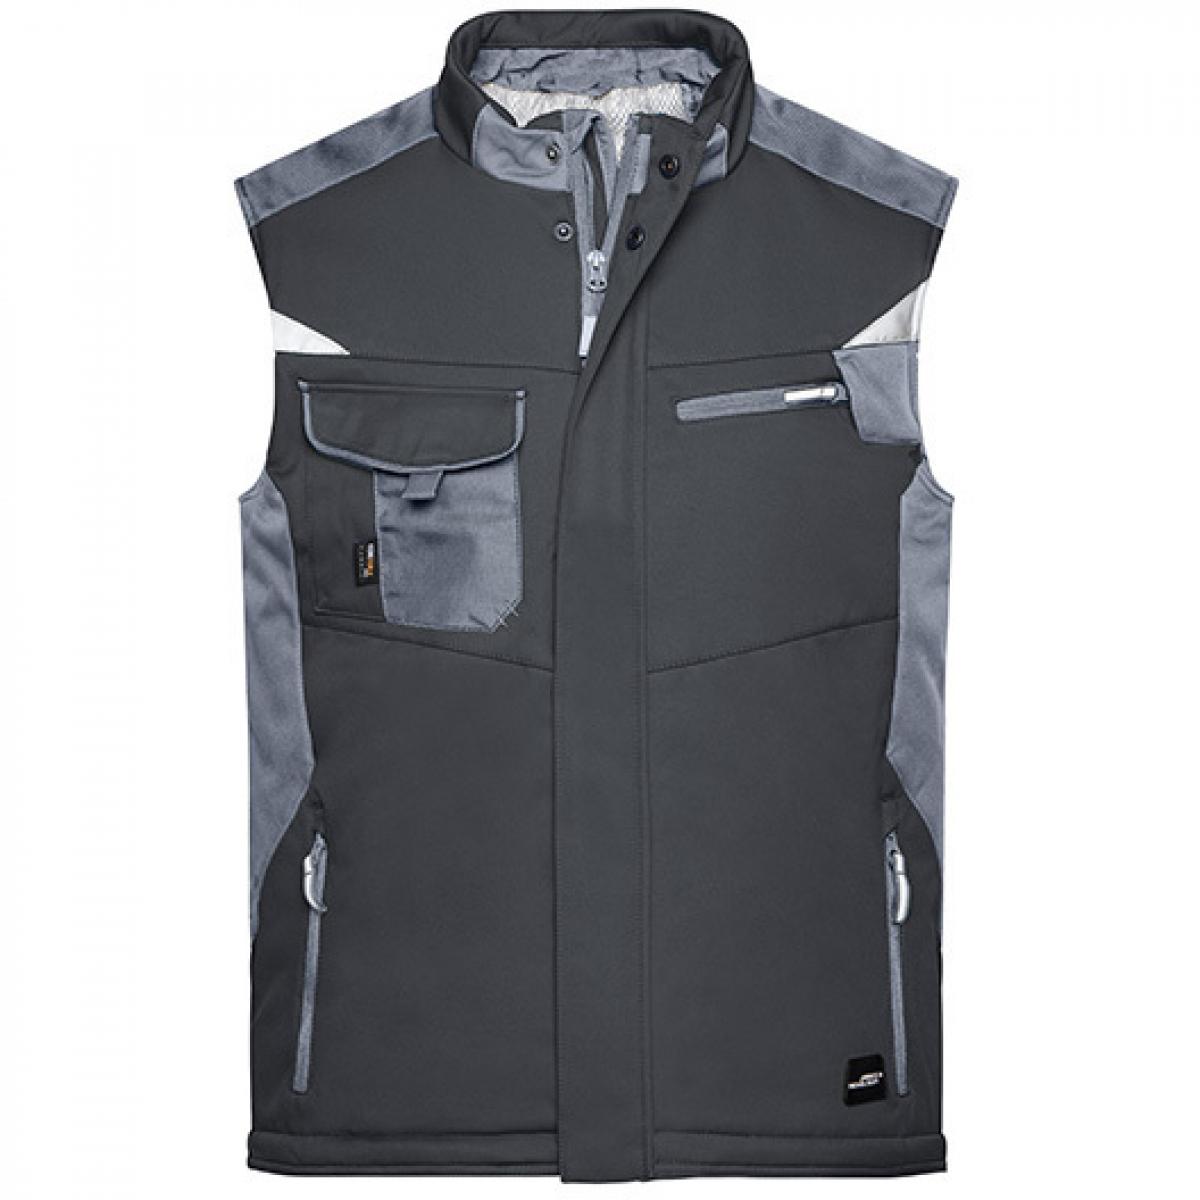 Hersteller: James+Nicholson Herstellernummer: JN825 Artikelbezeichnung: Herren Jacke, Craftsmen Softshell Vest -STRONG- Farbe: Black/Carbon